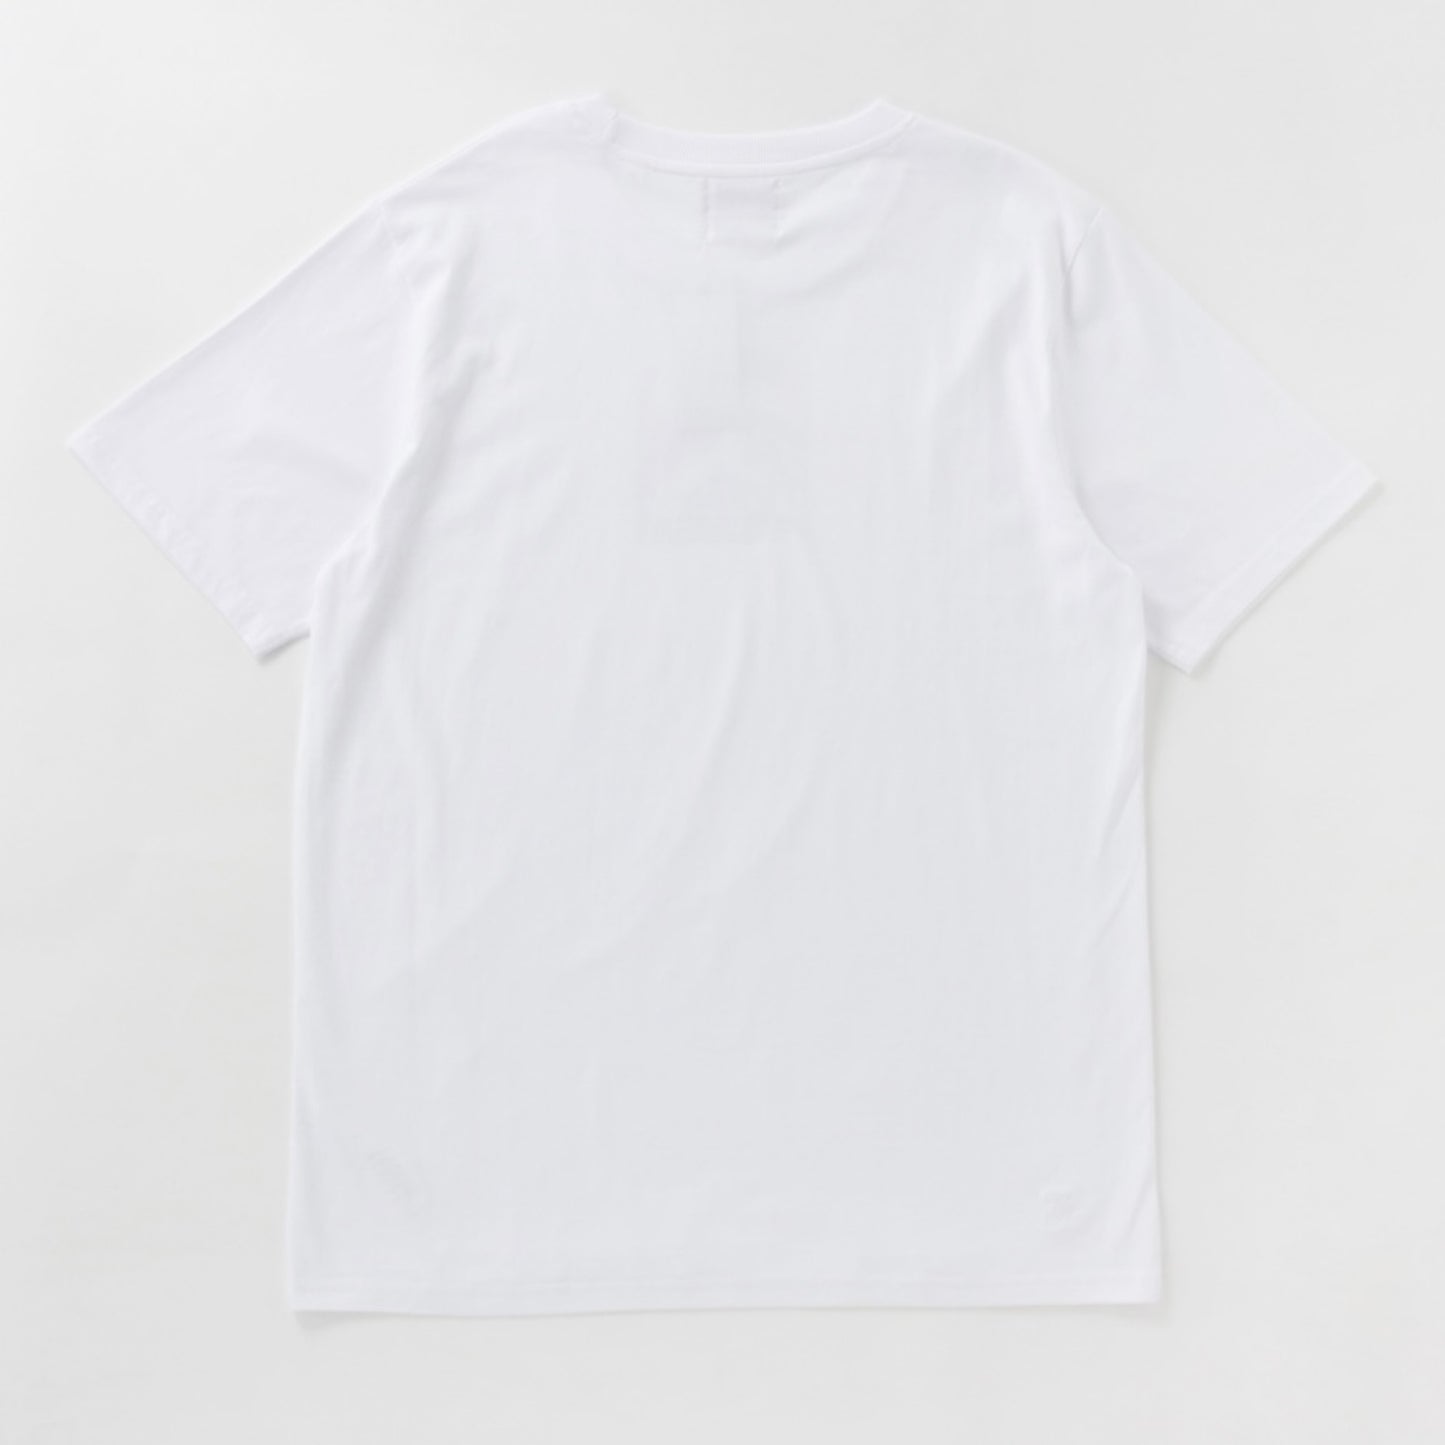 PROSTITUZIONE INTELLETTUALE T-shirt stampata-WHITE